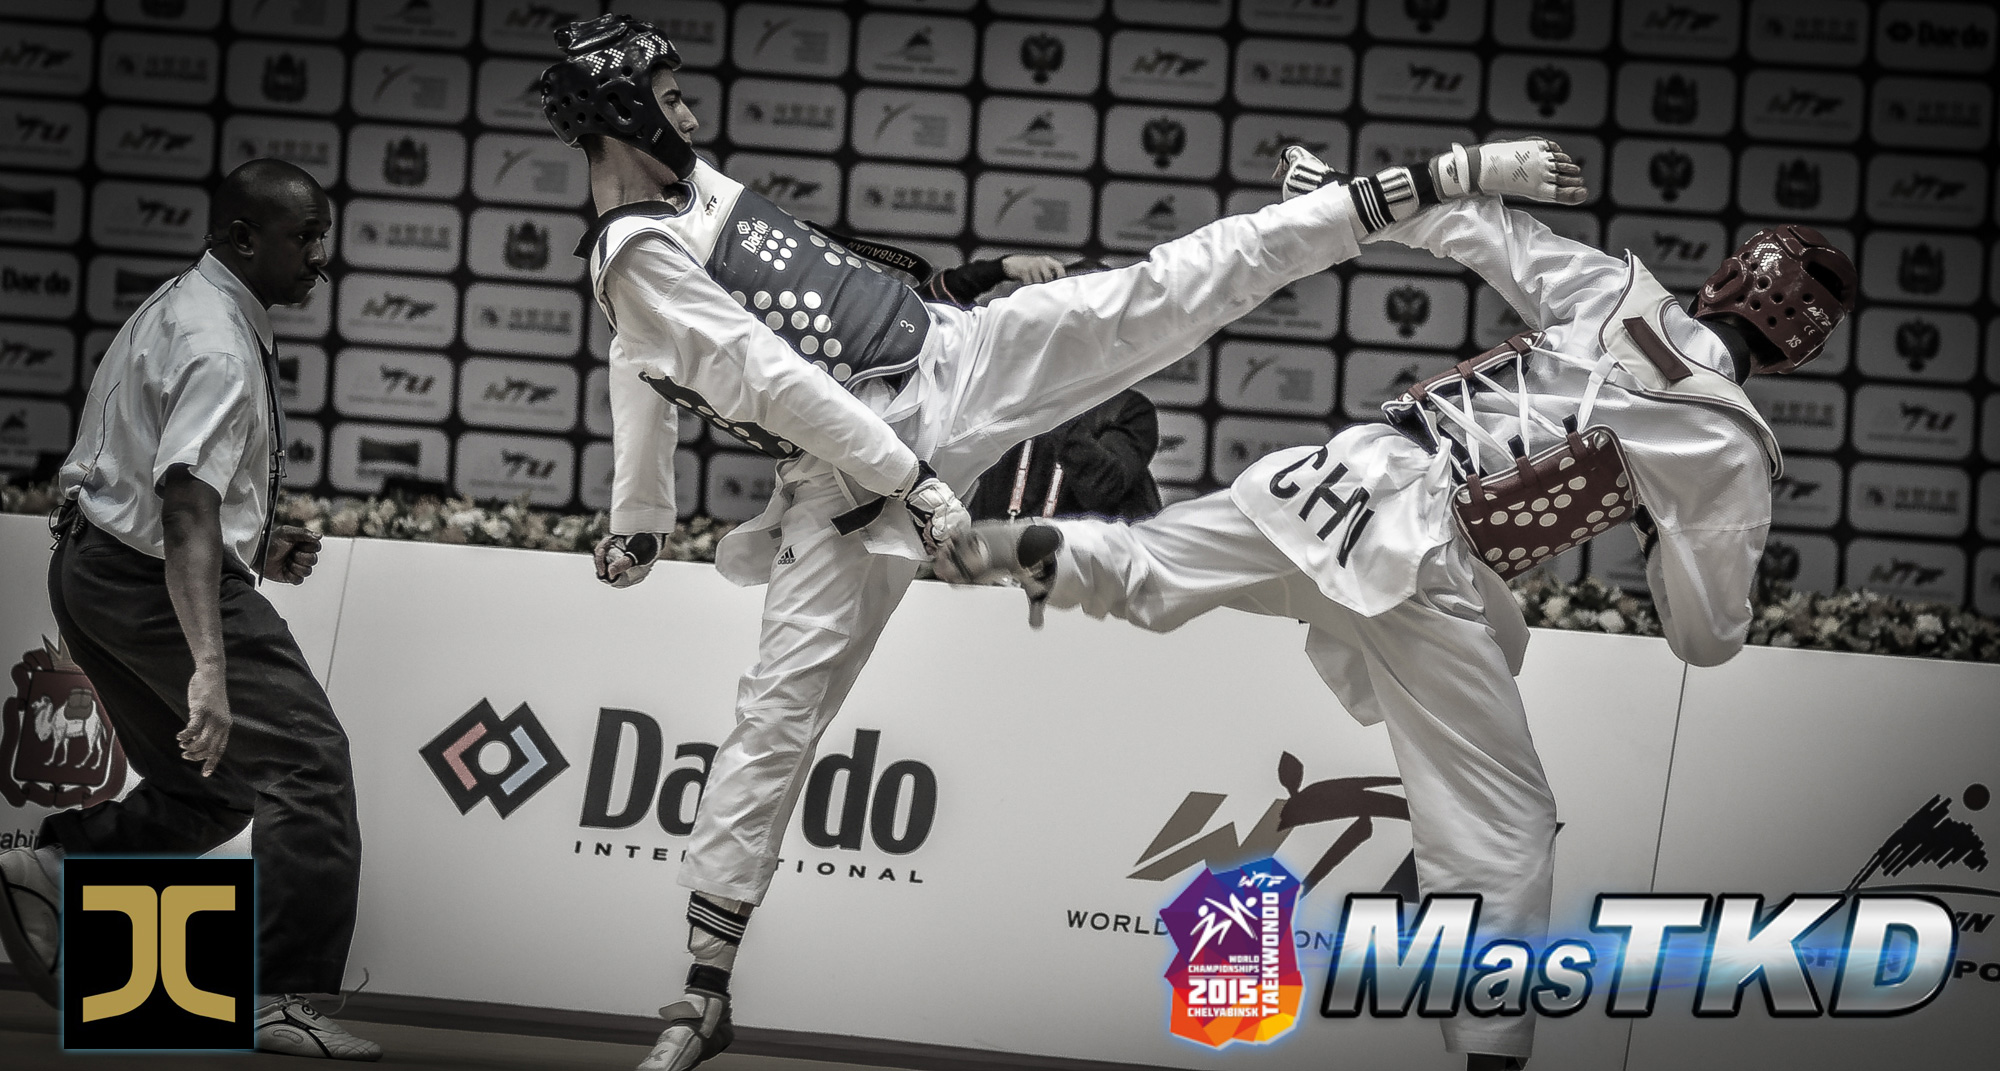 09_20150512_Taekwondo-Mundial_JC-Seleccion_D1